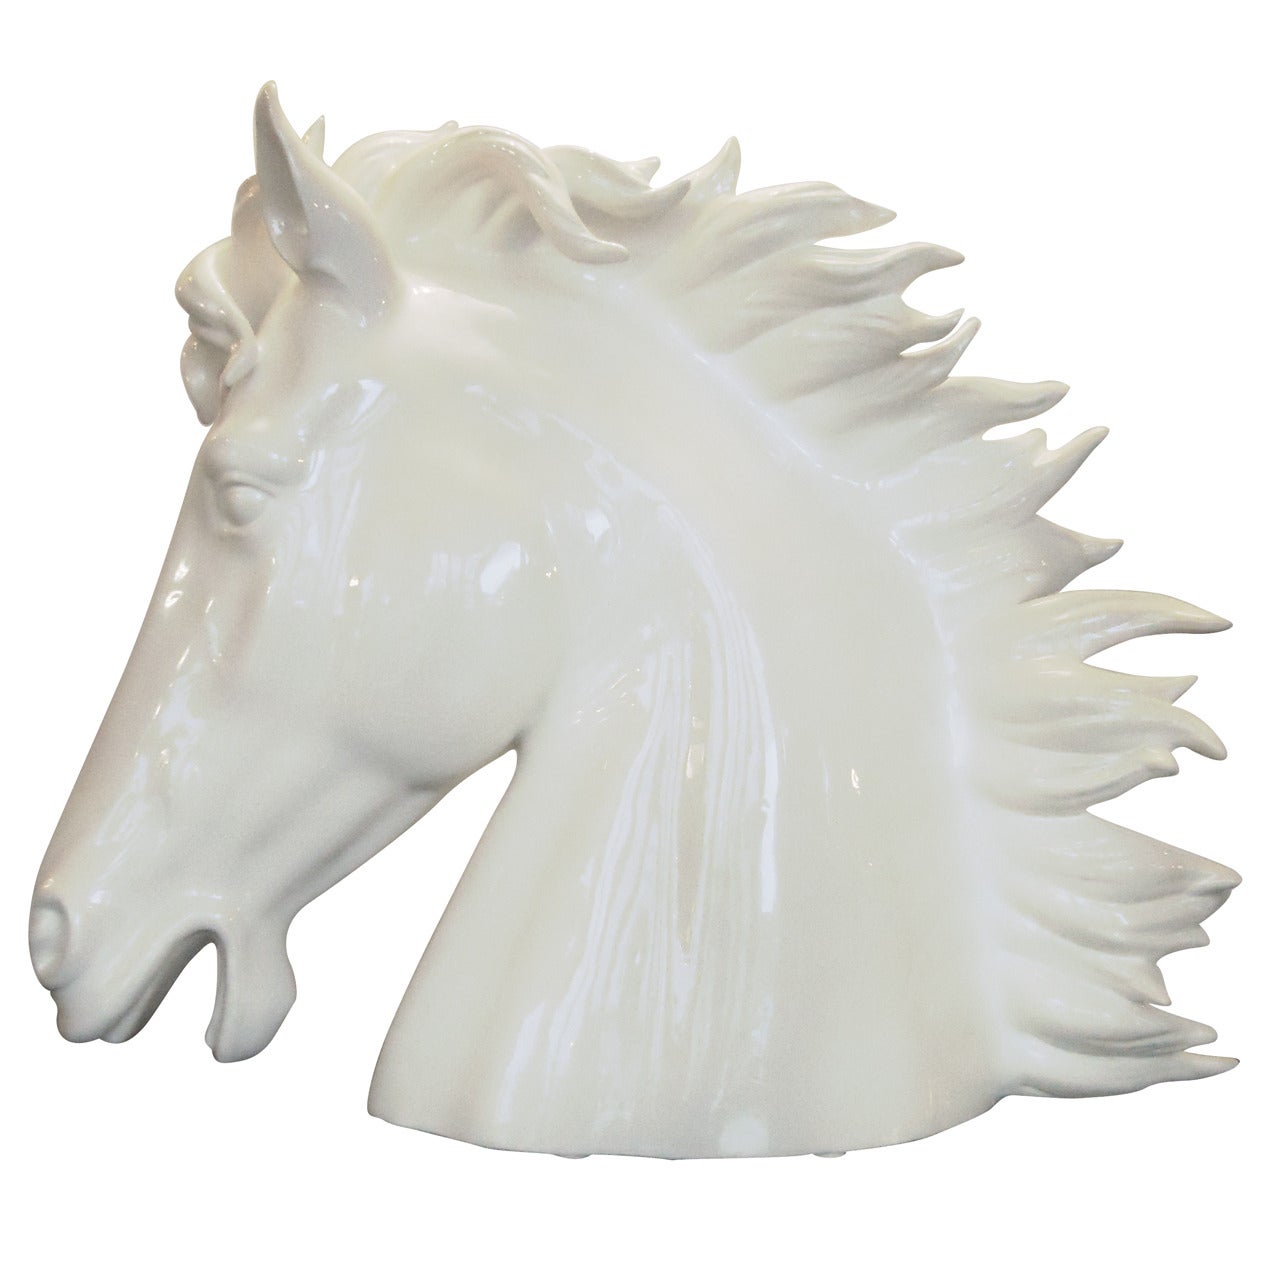 Massive Ceramic Horse